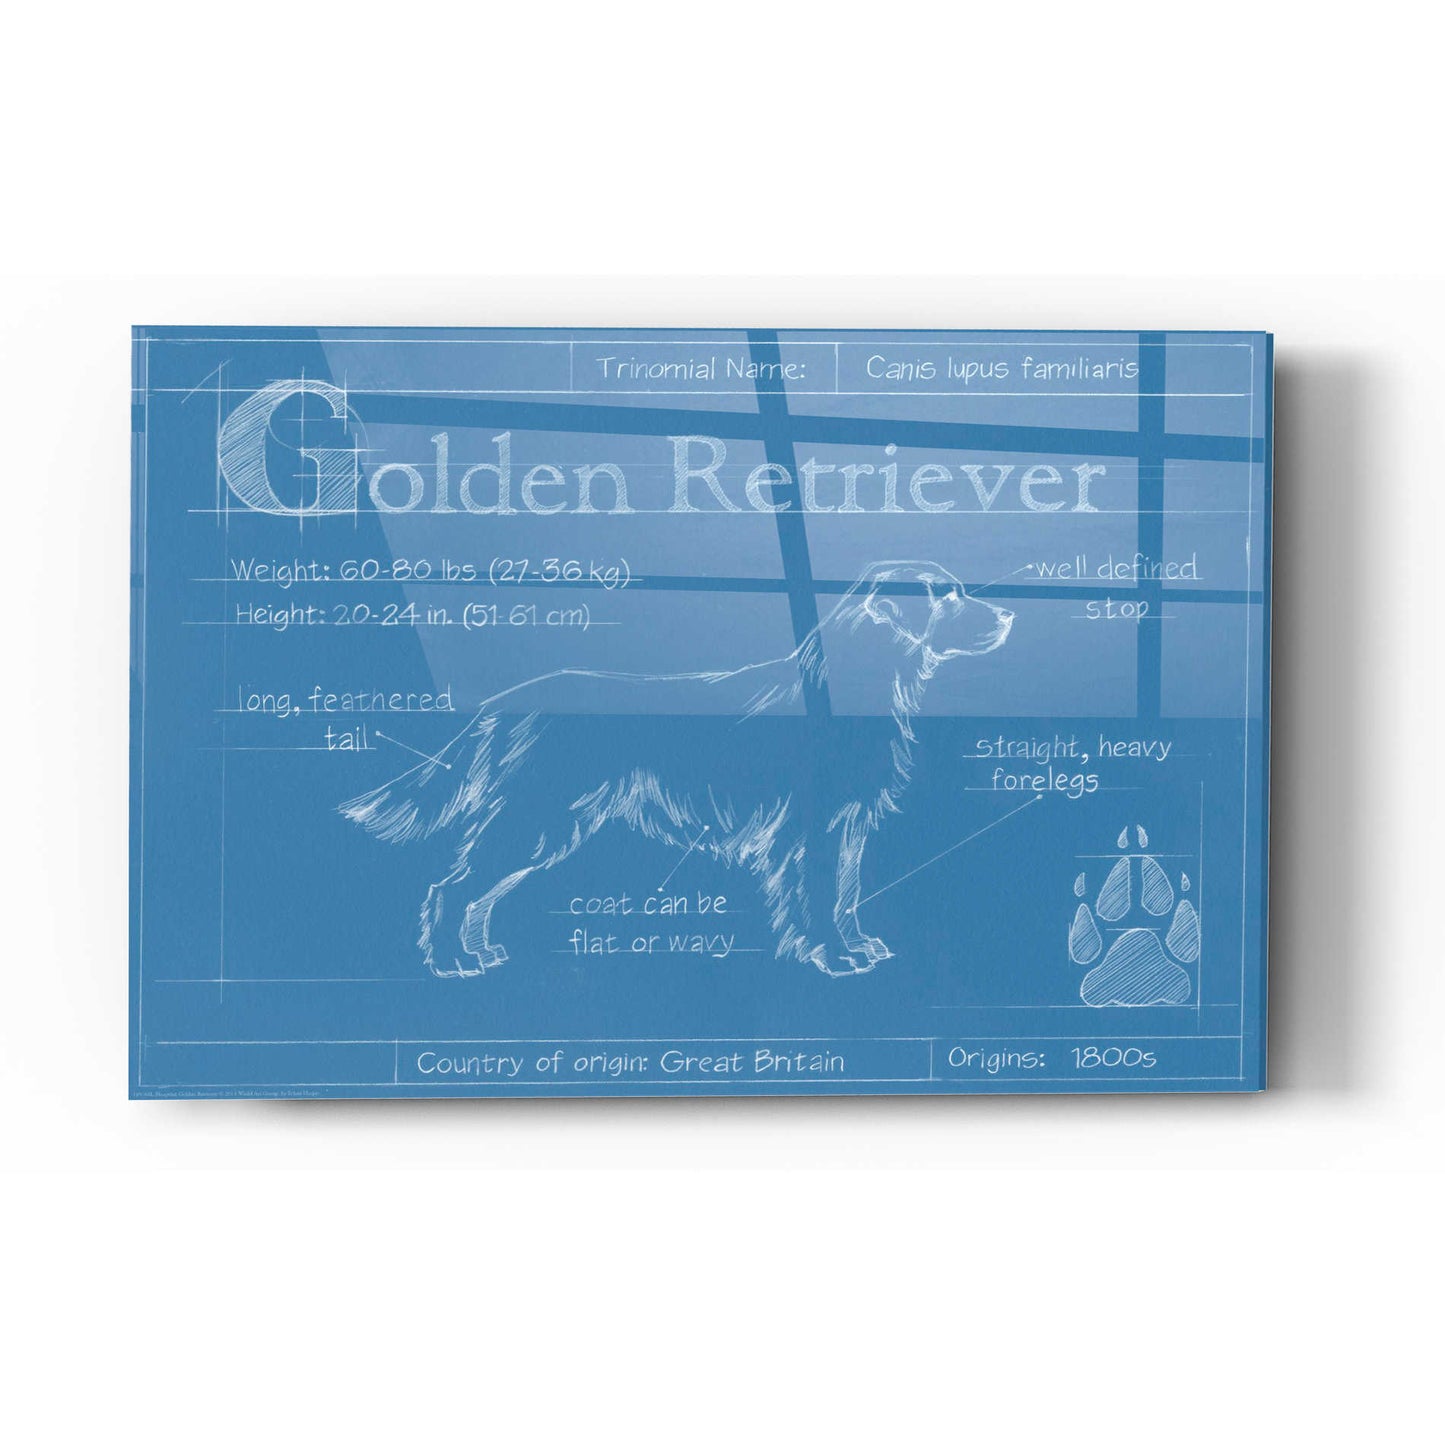 Epic Art 'Blueprint Golden Retriever' by Ethan Harper Acrylic Glass Wall Art,12x16